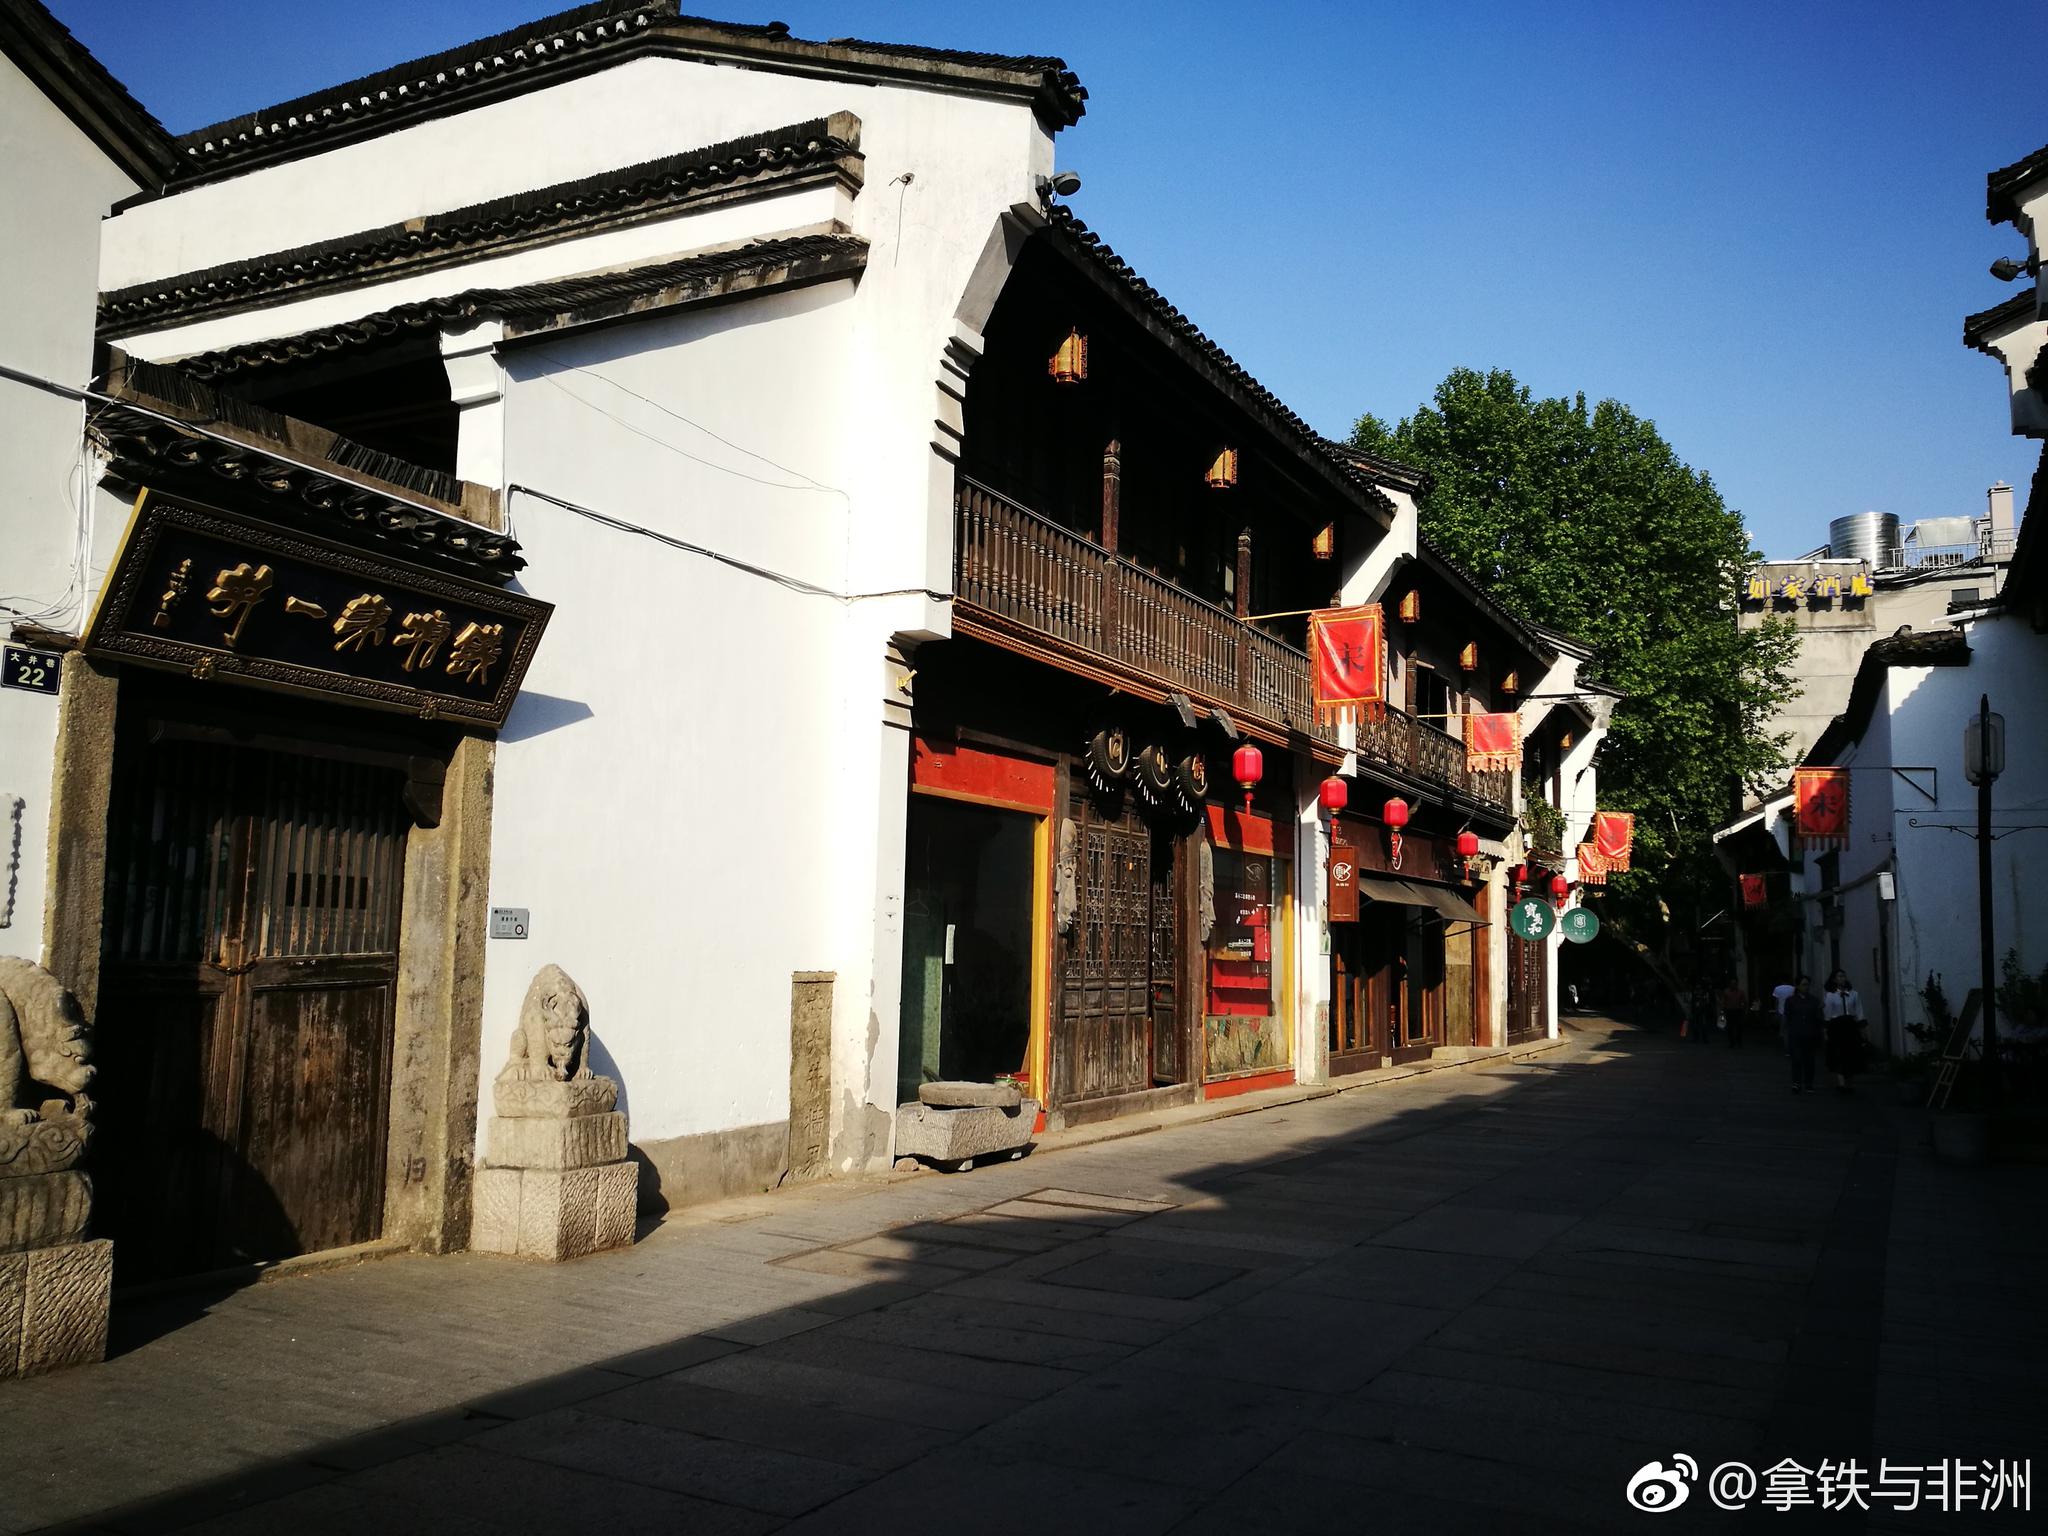 【携程攻略】杭州南宋御街景点,南宋御街，听名字就想起“暖风熏得游人醉，直把杭州作汴州"…